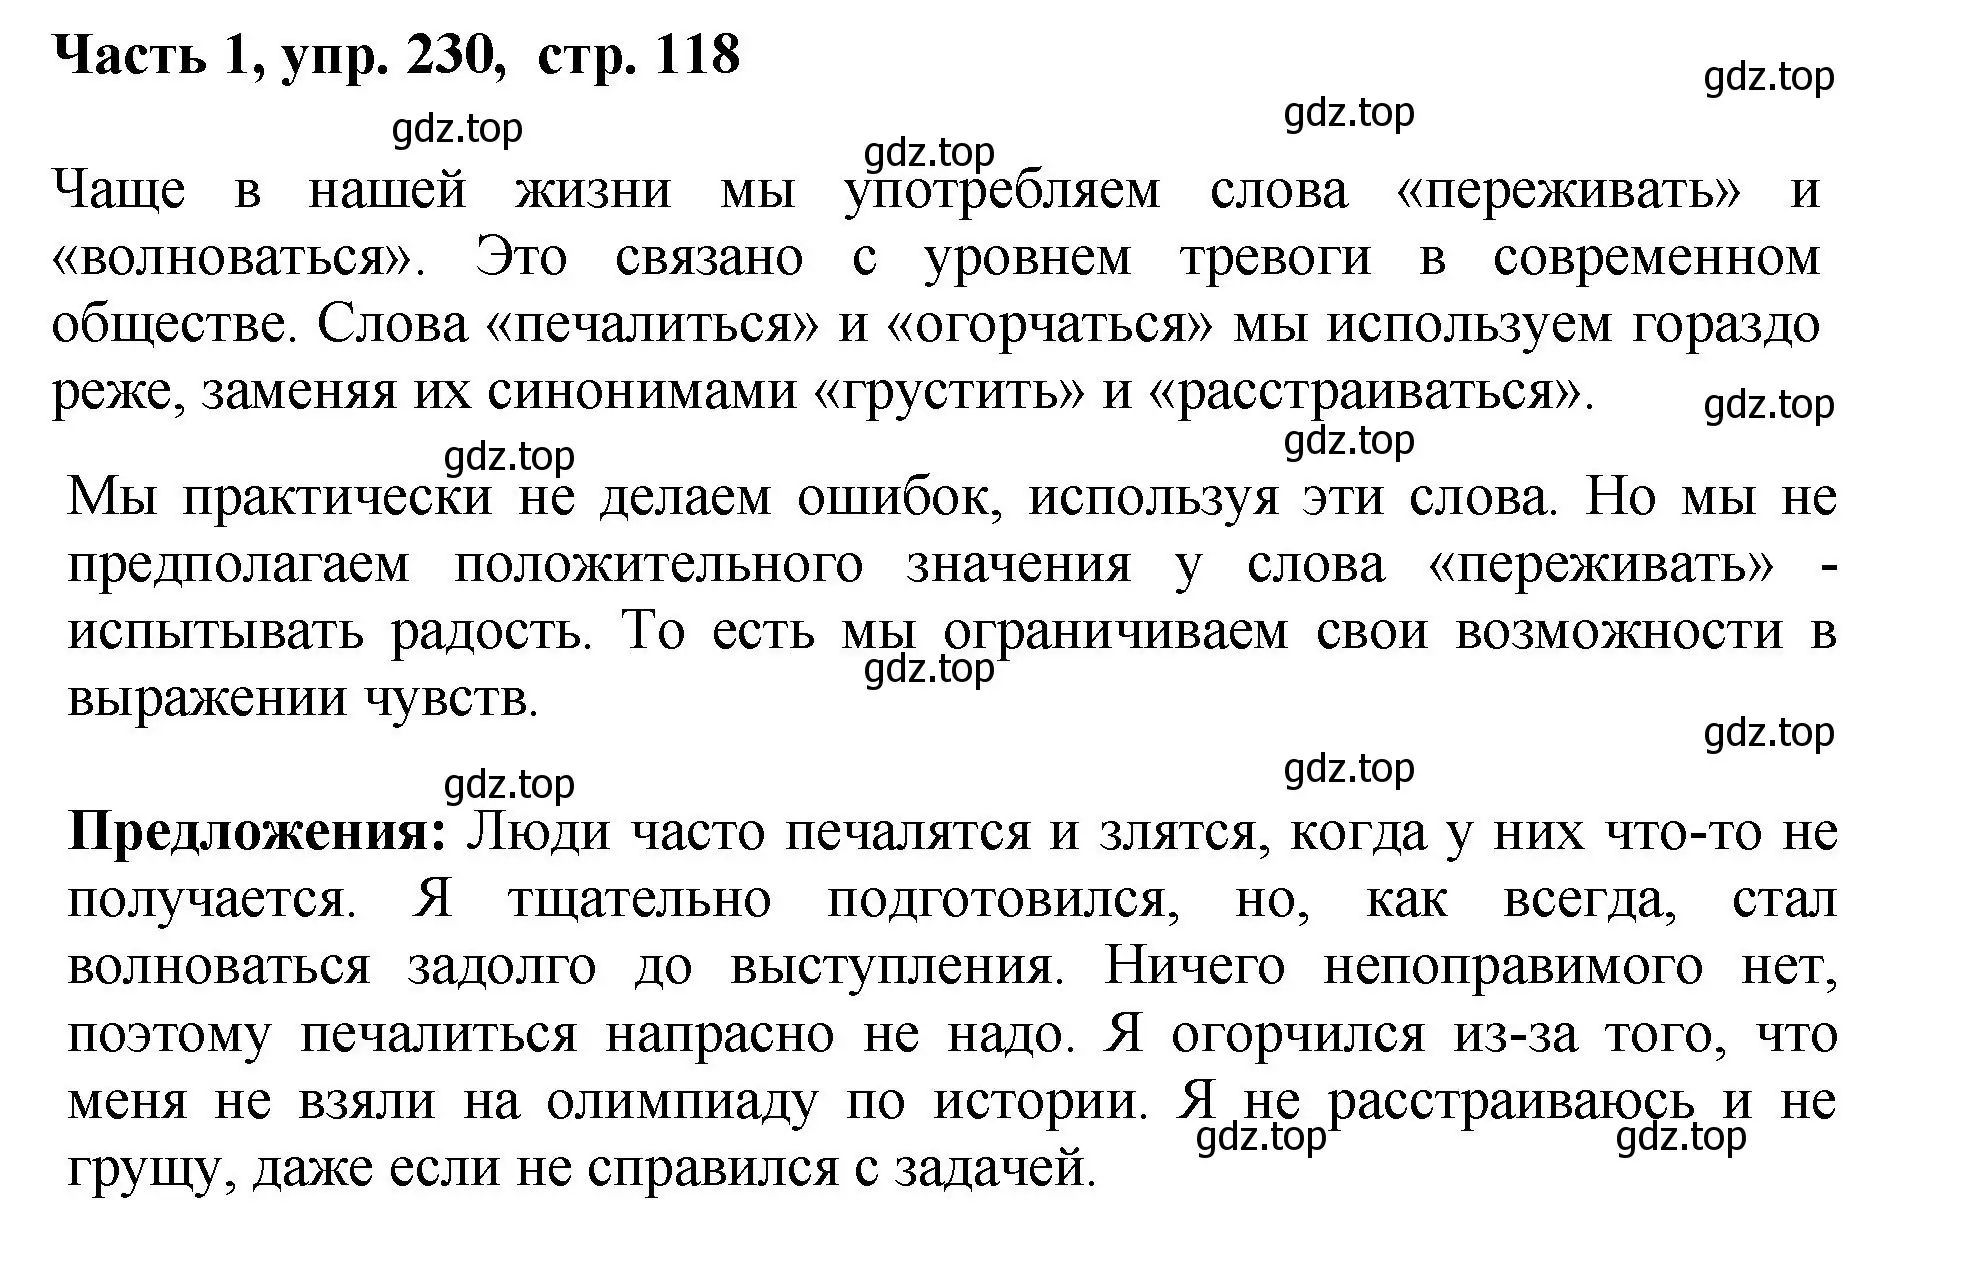 Решение номер 230 (страница 118) гдз по русскому языку 6 класс Баранов, Ладыженская, учебник 1 часть